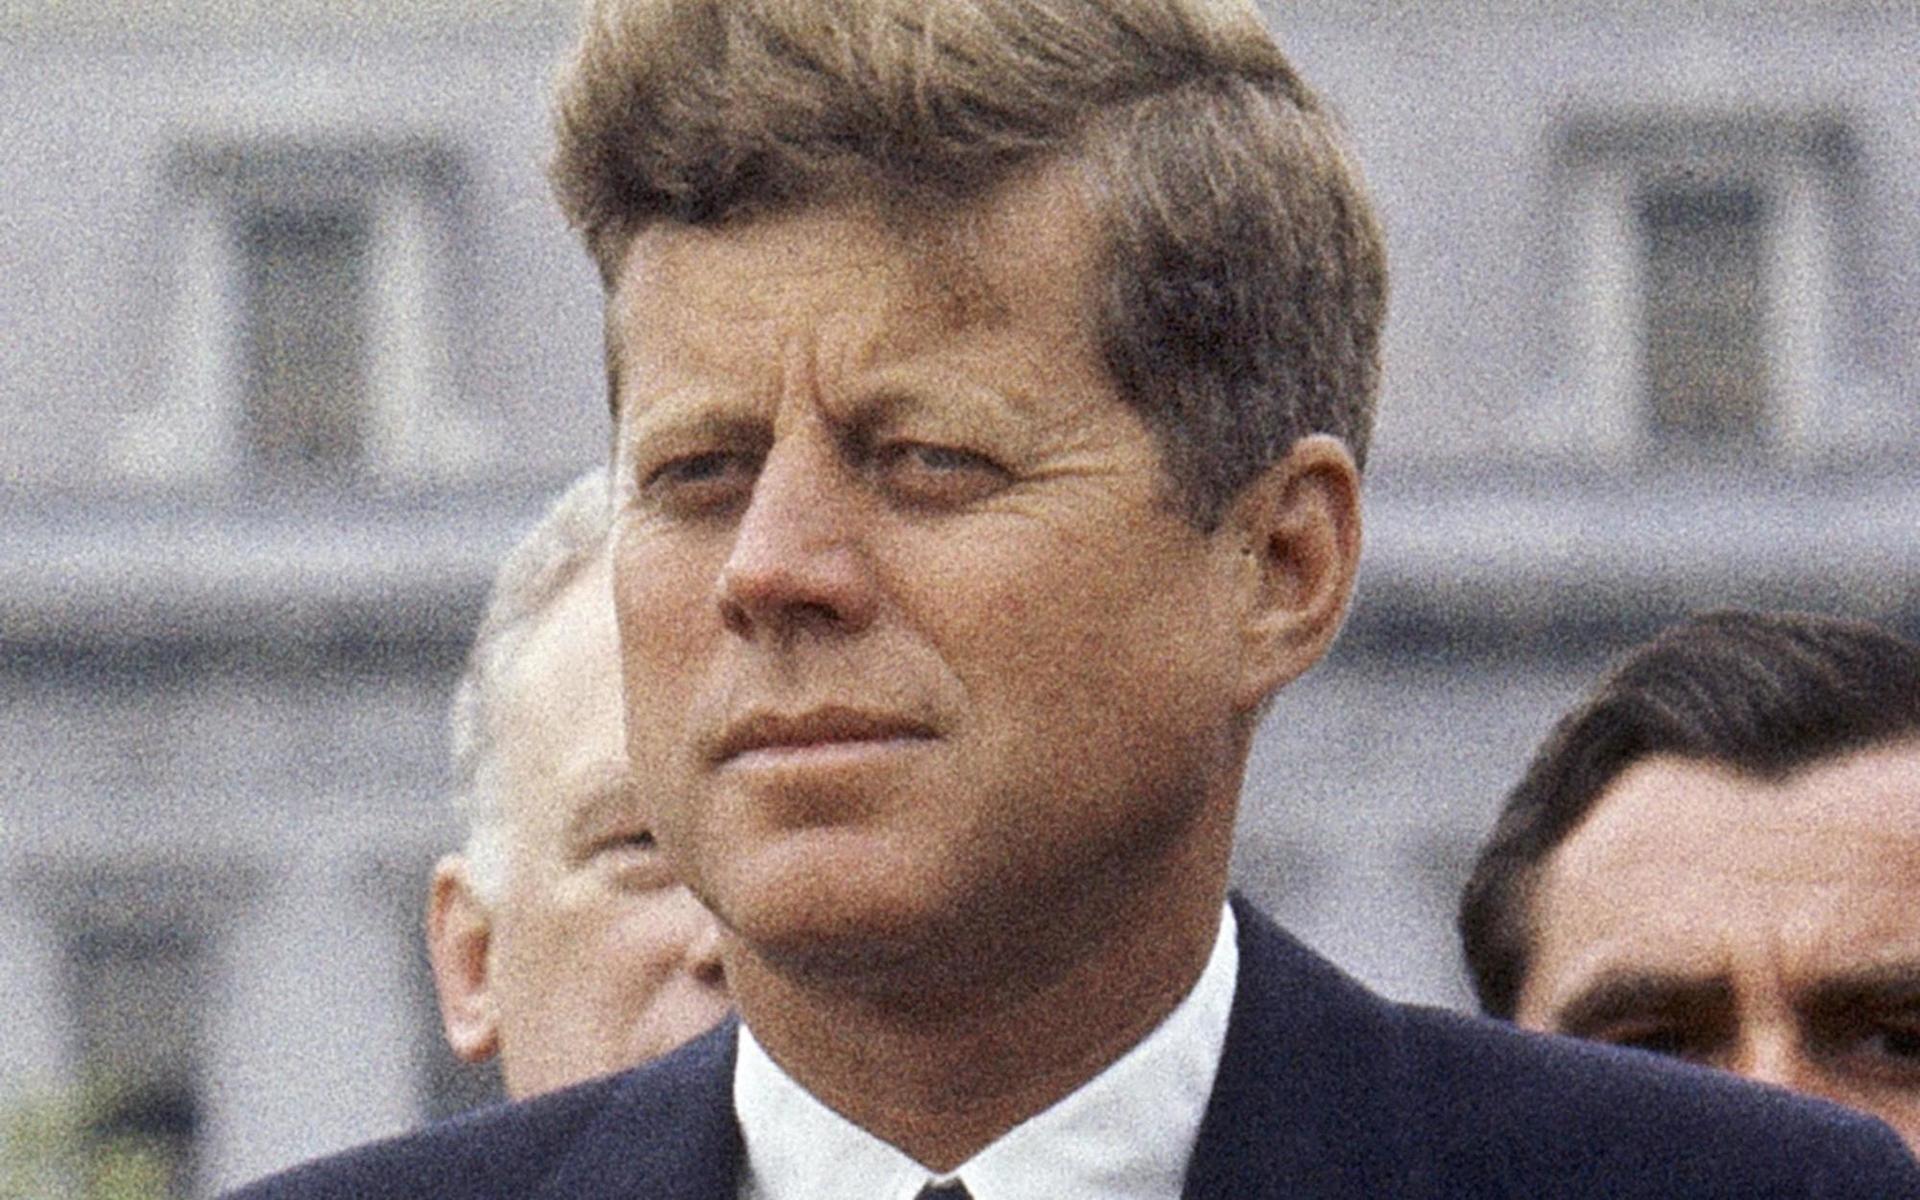 Många amerikanska presidenter har haft sjukdomar som inte avslöjats för allmänheten. John F Kennedy led av Addisons sjukdom, vilket inte kom fram förrän efter hans död.